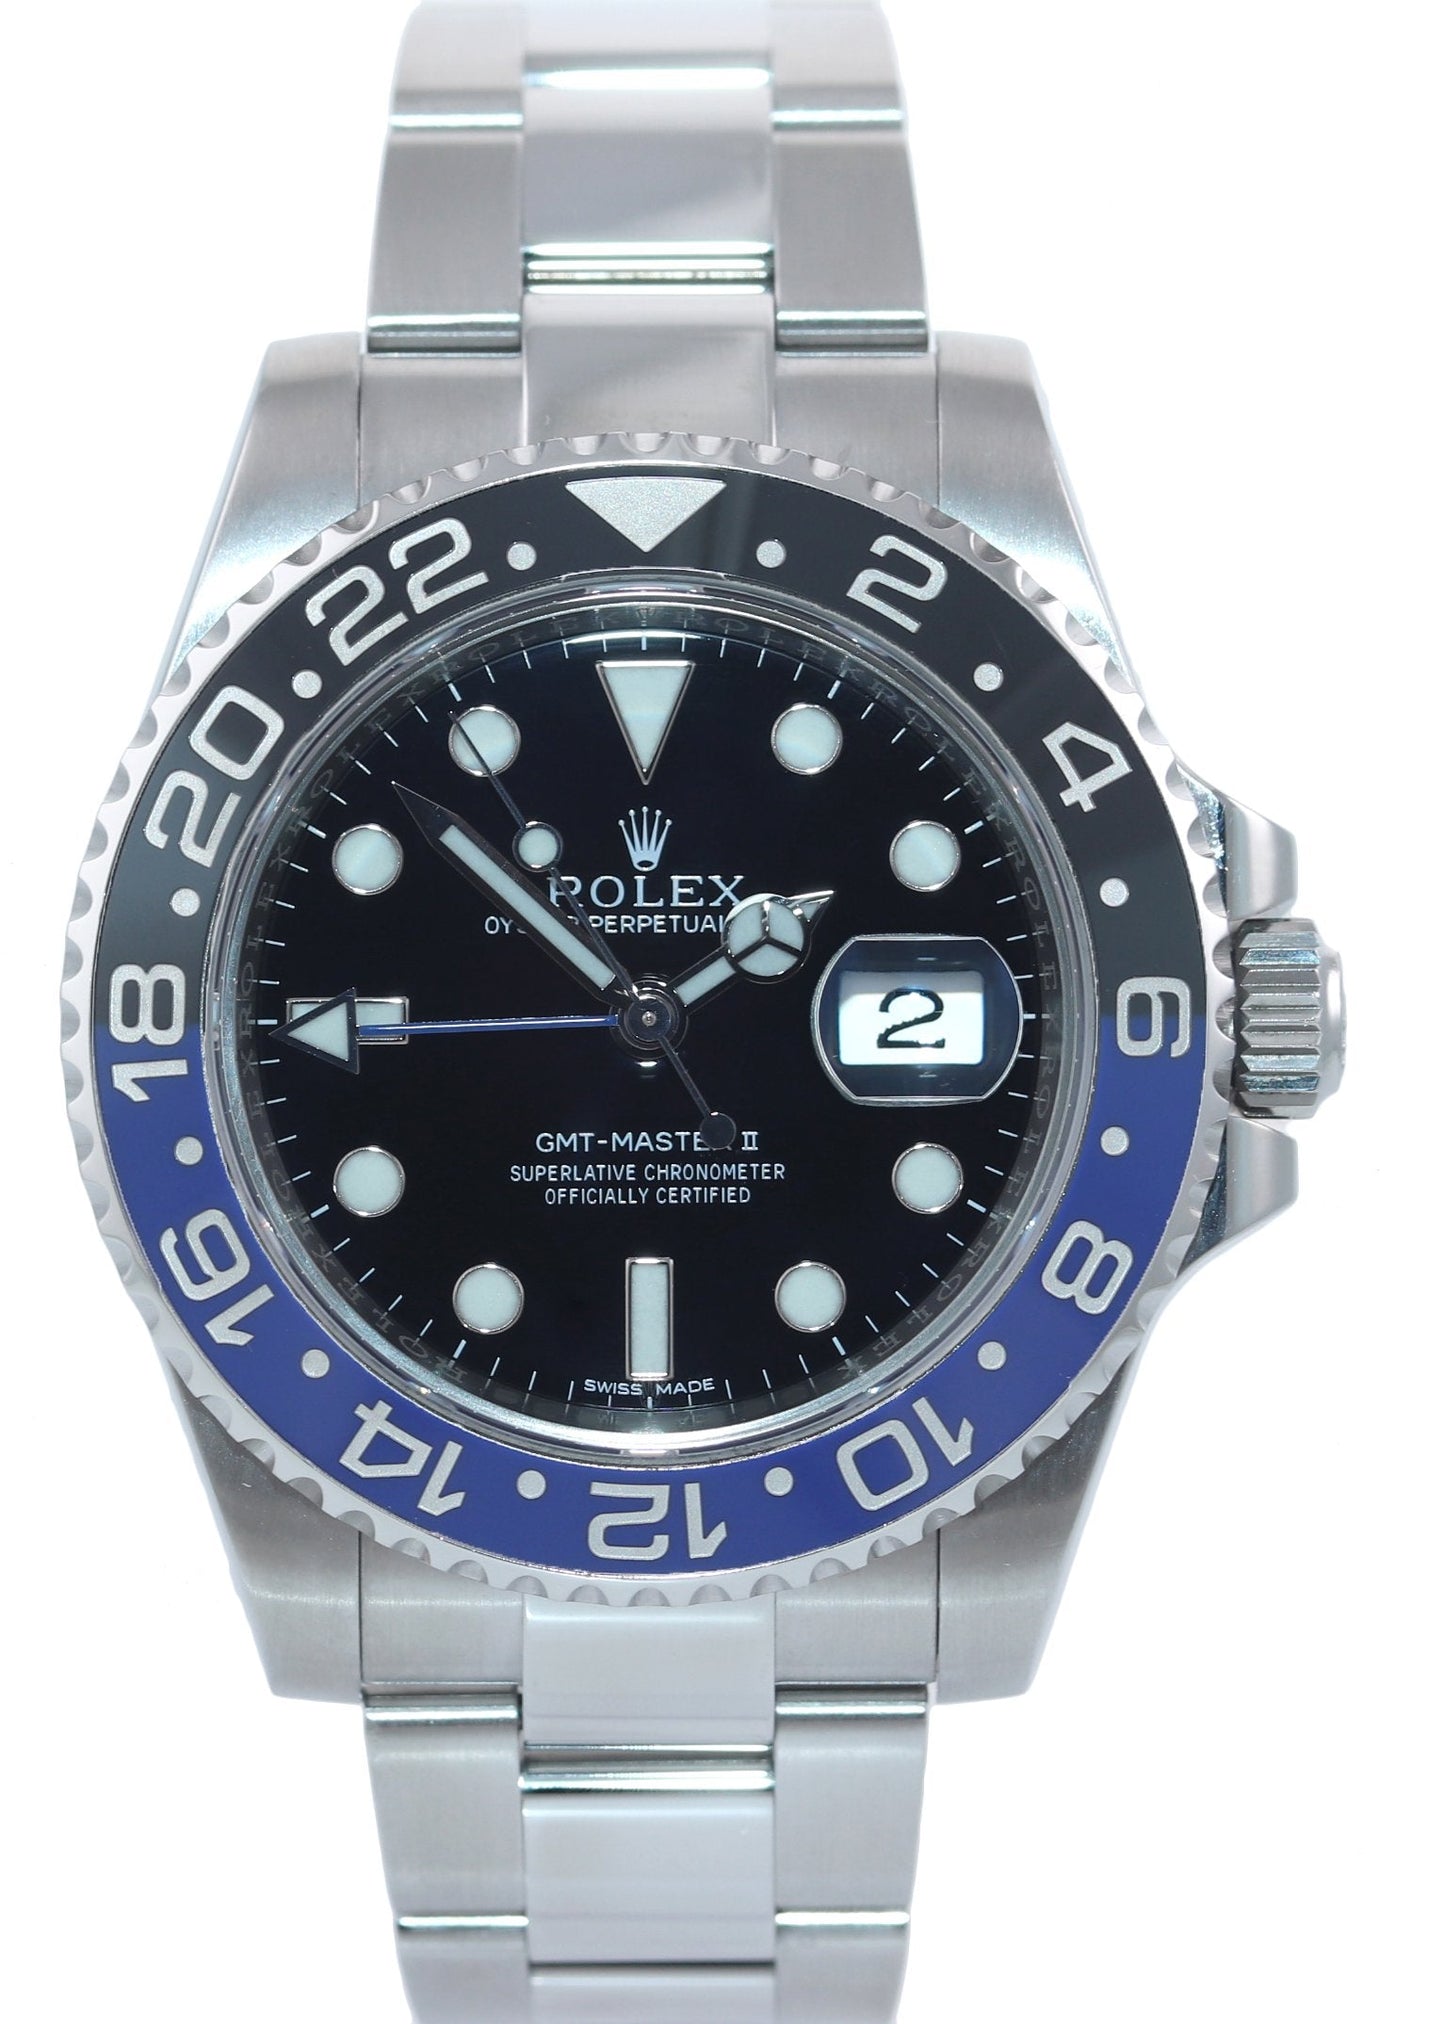 MINT 2016 Rolex GMT Master II 116710 BLNR Steel Ceramic Batman Blue Watch Box